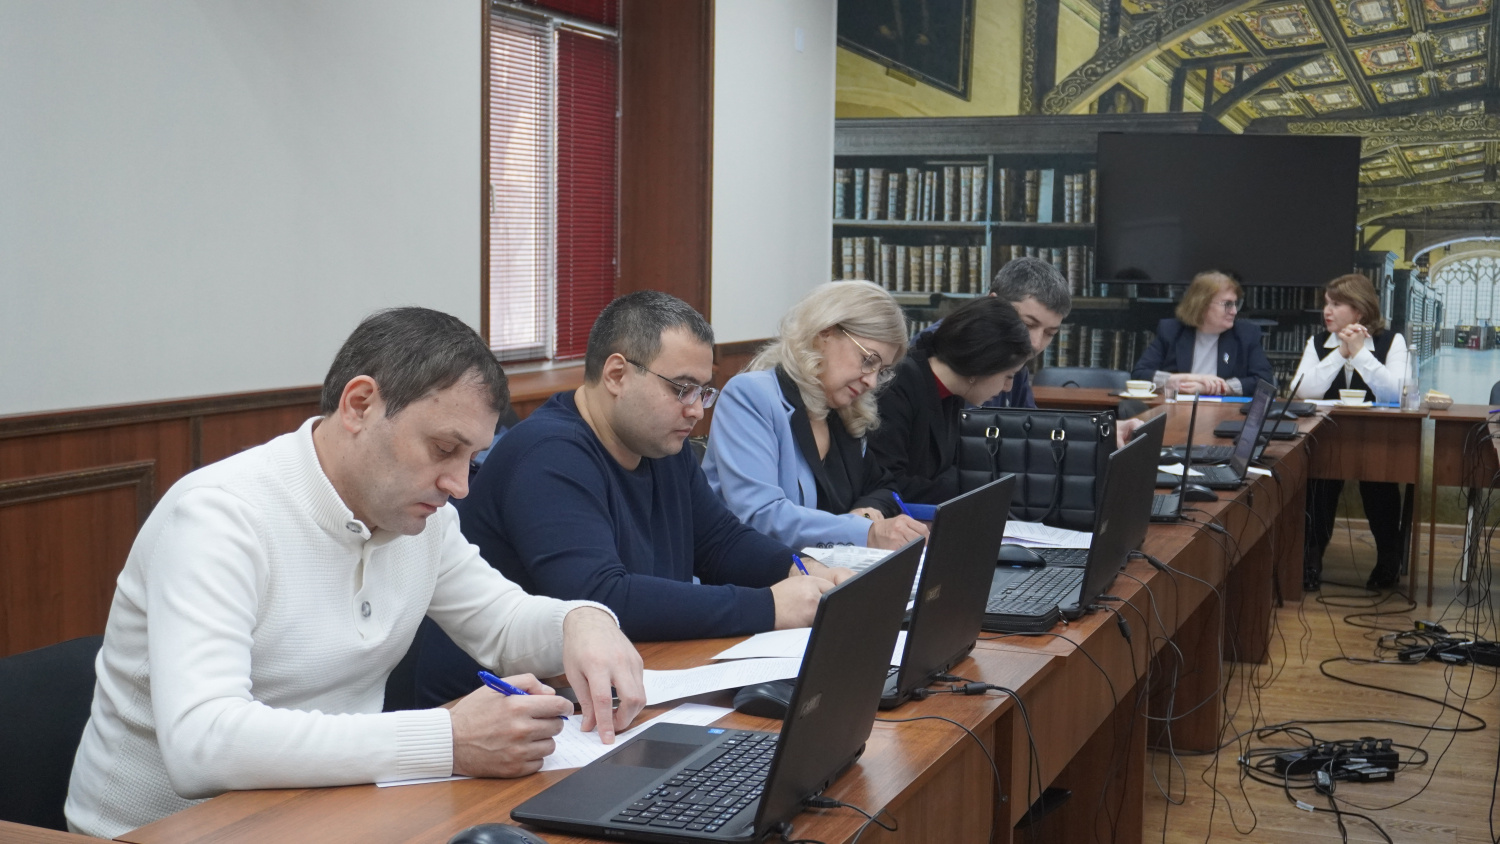 Госслужащие Дагестана завершили обучение по программе профпереподготовки "Государственное и муниципальное управление"